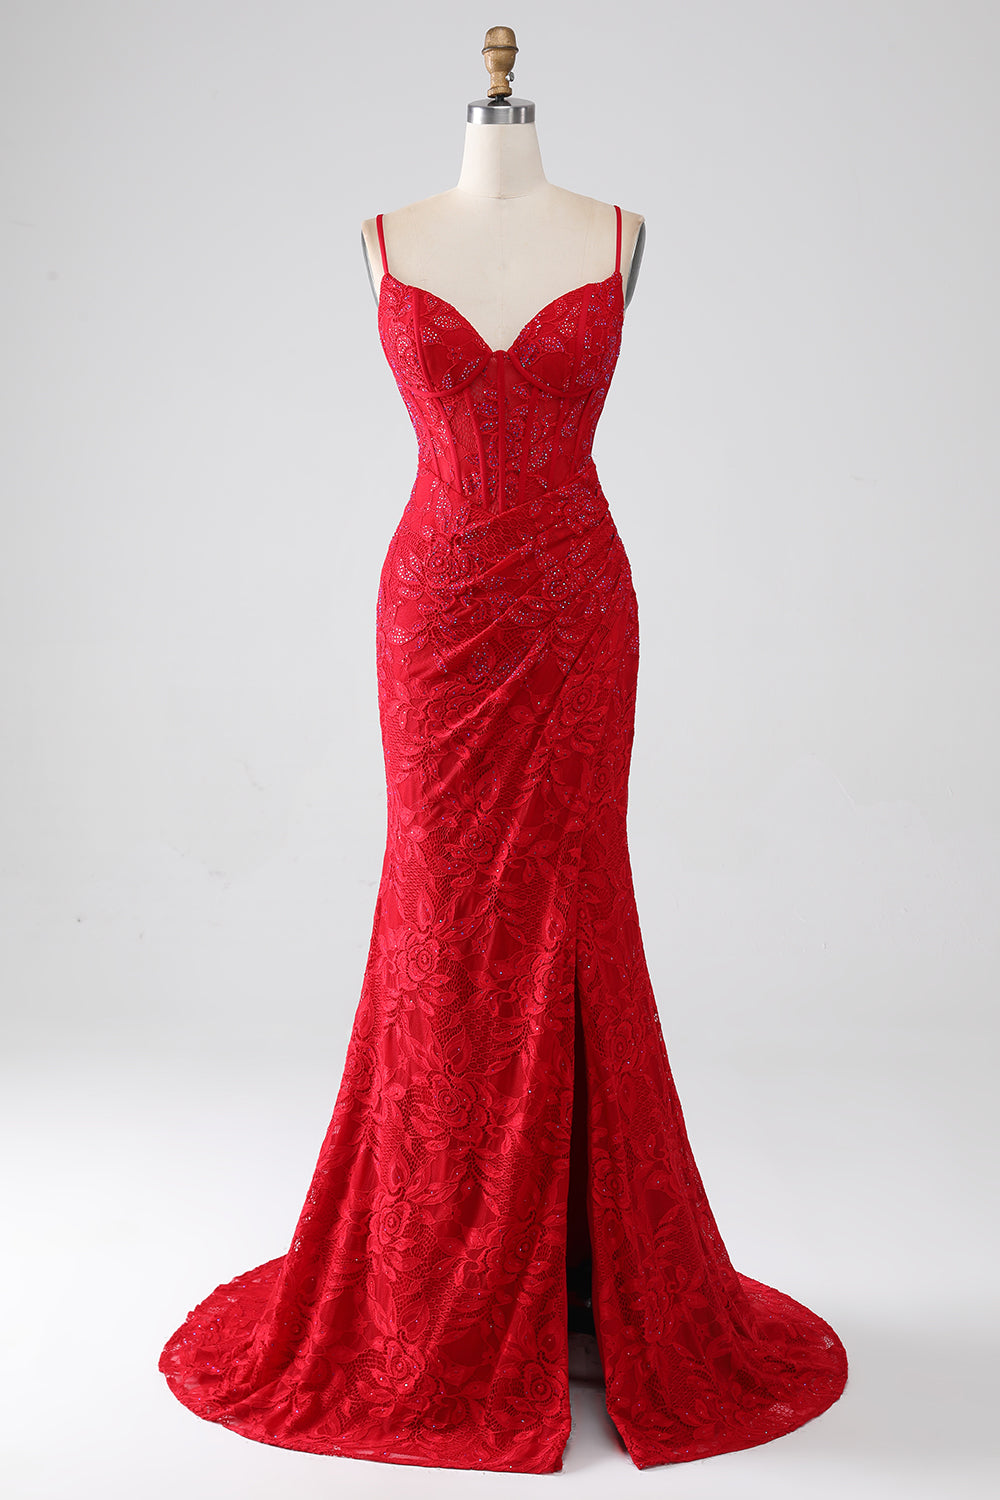 Sereia Vermelha Esparguete Correias Frisado Renda Applique Prom Dress Com Fenda